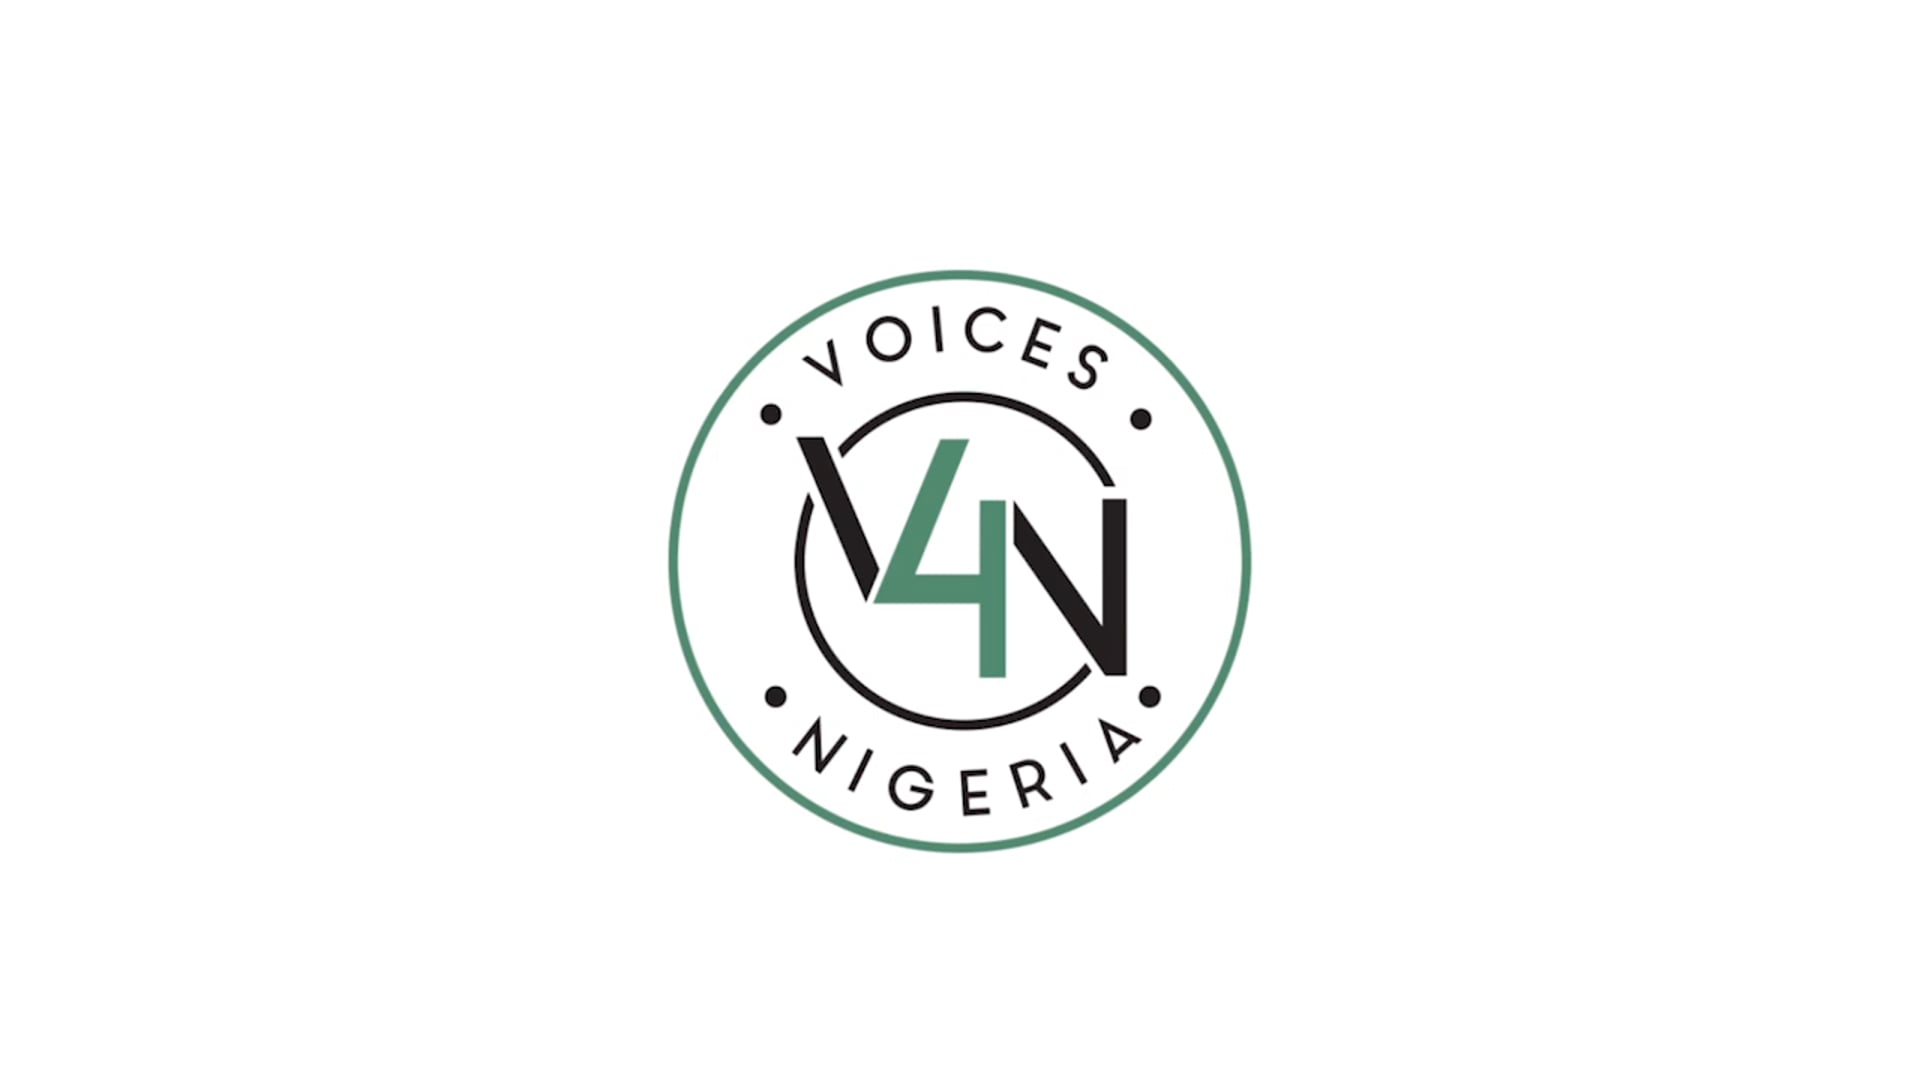 Voices 4 Nigeria